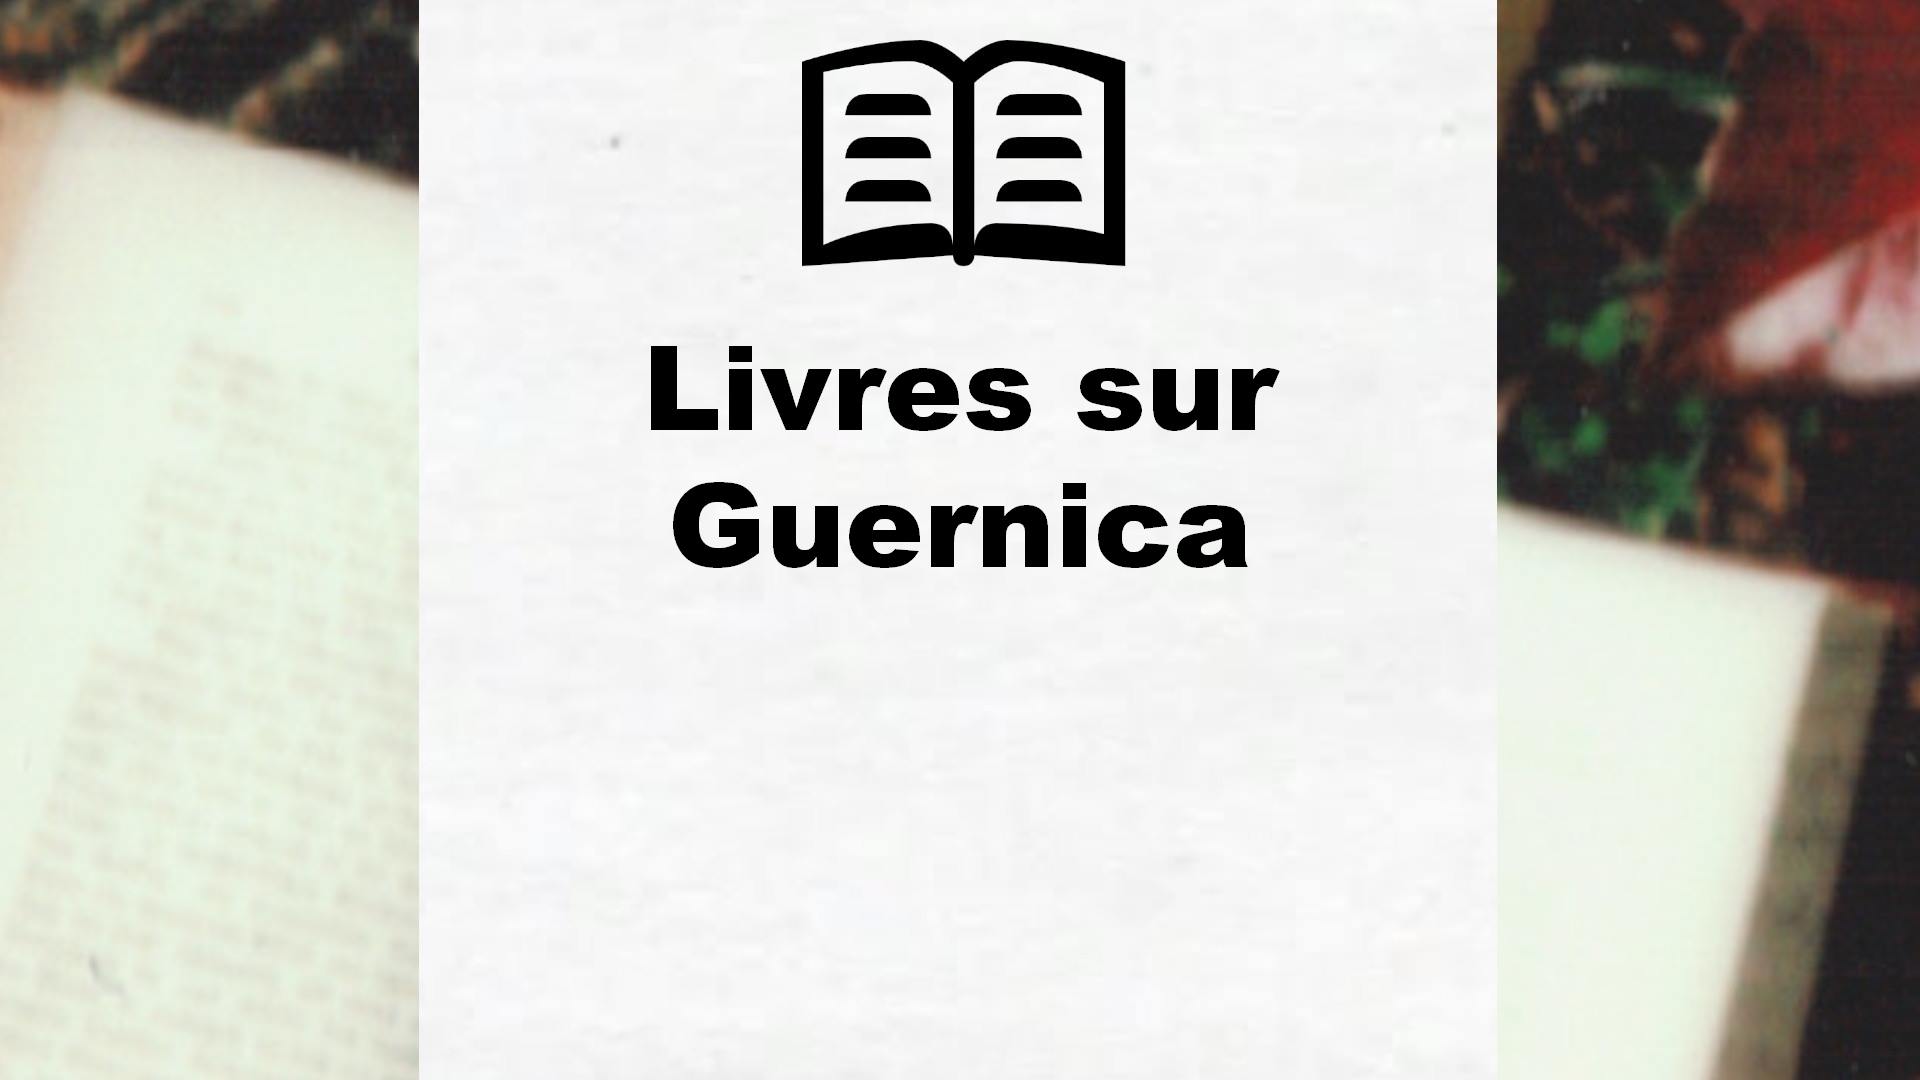 Livres sur Guernica